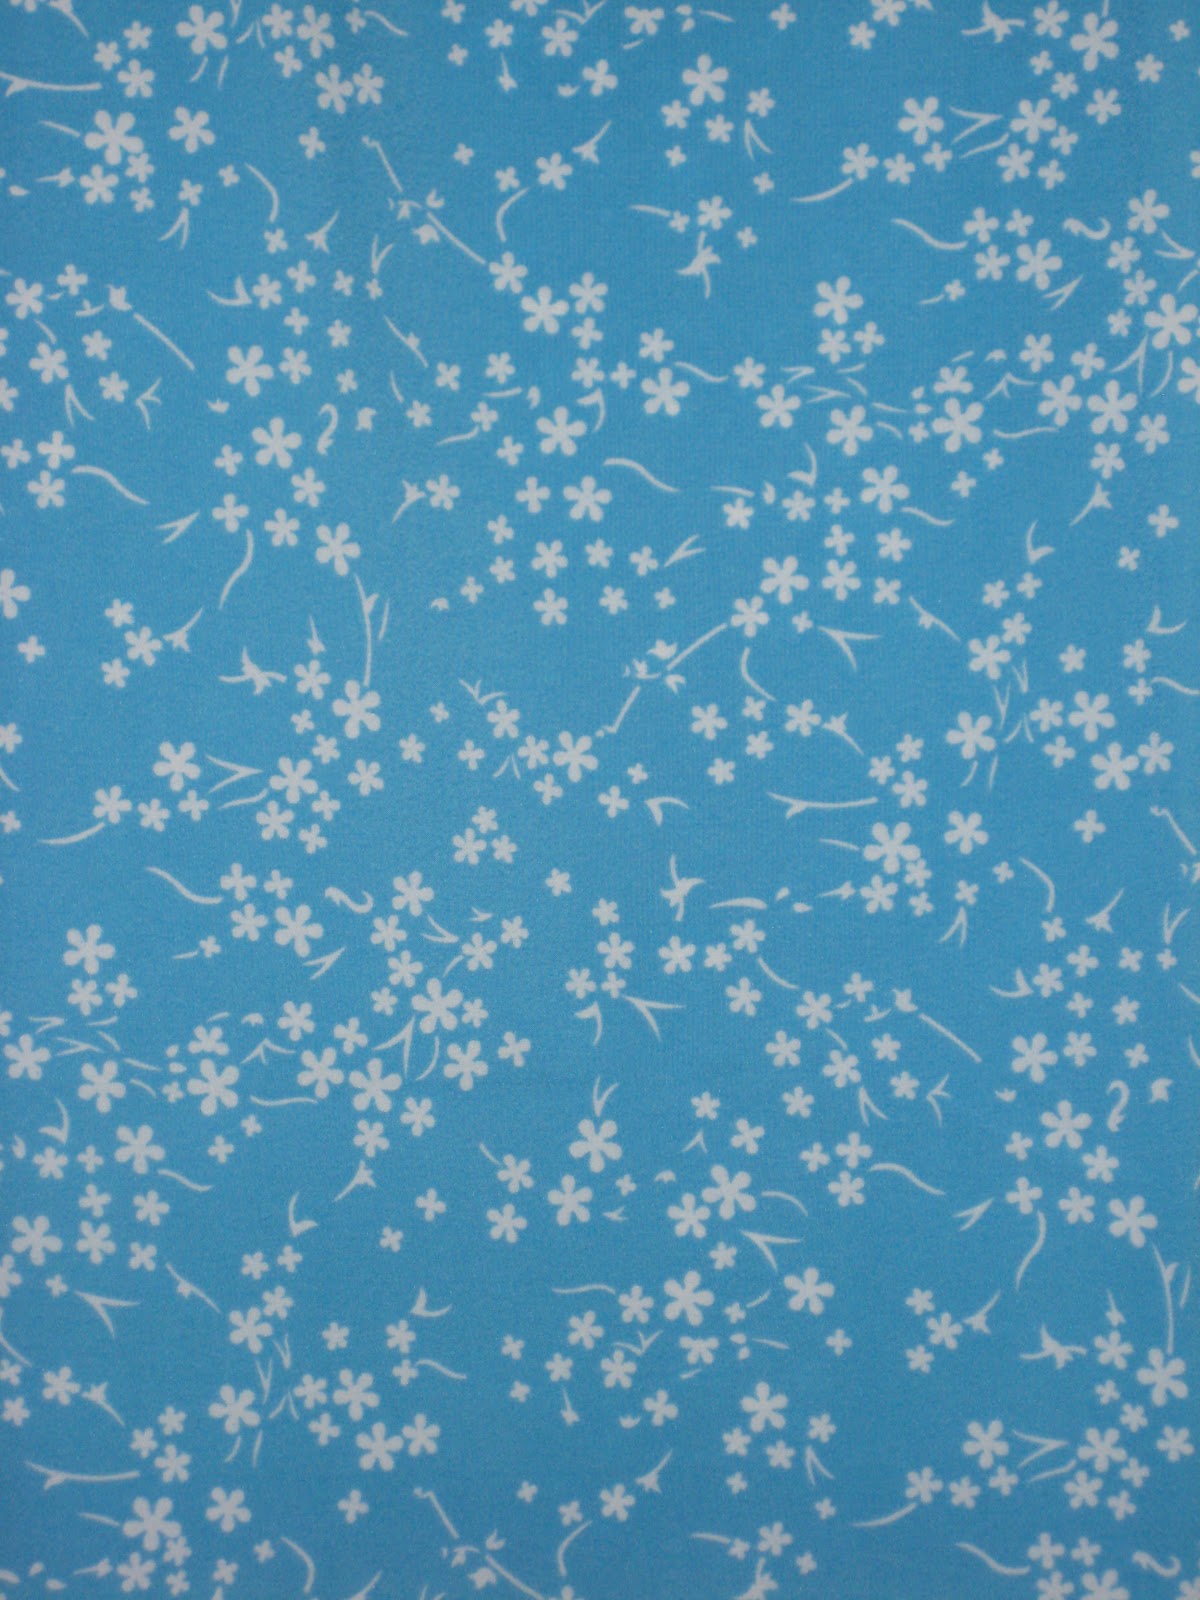 배경 biru muda,푸른,무늬,아쿠아,터키 옥,디자인